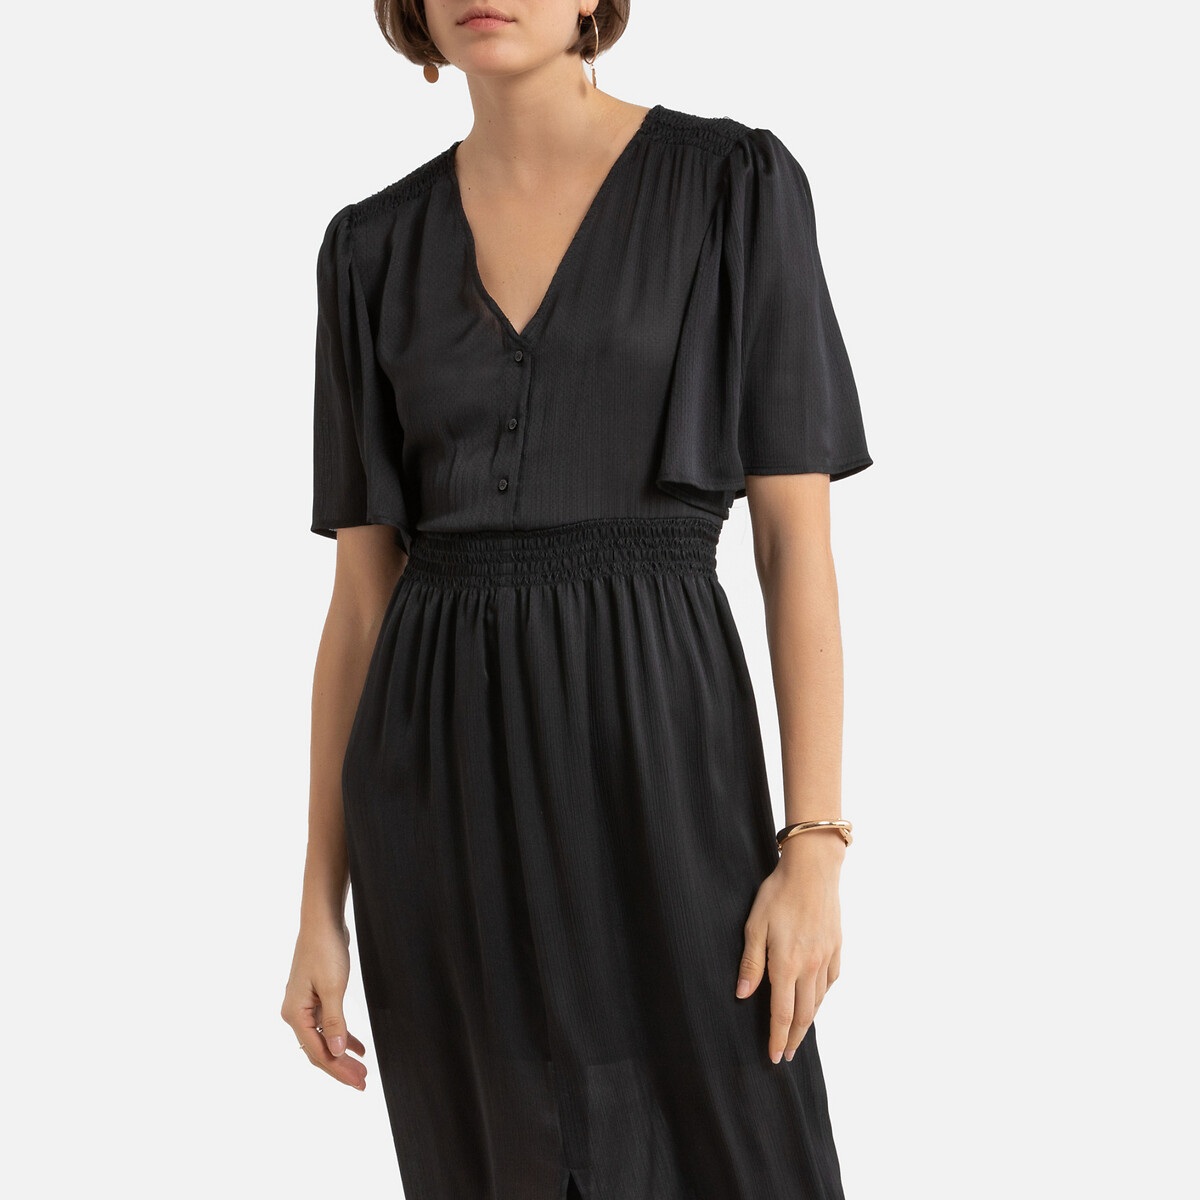 Платье LaRedoute Длинное V-образный вырез короткие рукава 1(S) черный, размер 1(S) Длинное V-образный вырез короткие рукава 1(S) черный - фото 4